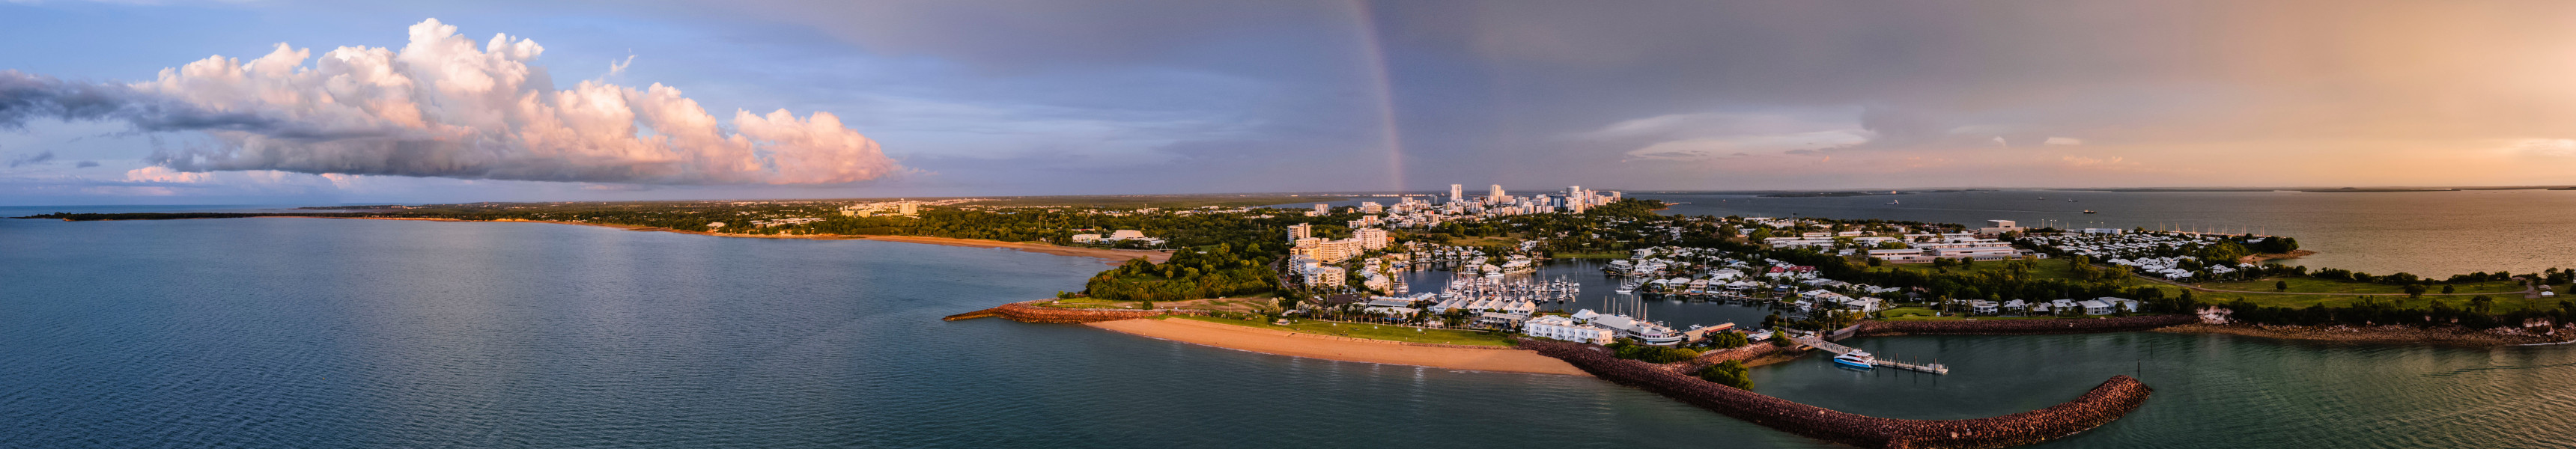 Regenbogen über der Stadt Darwin in Australien 